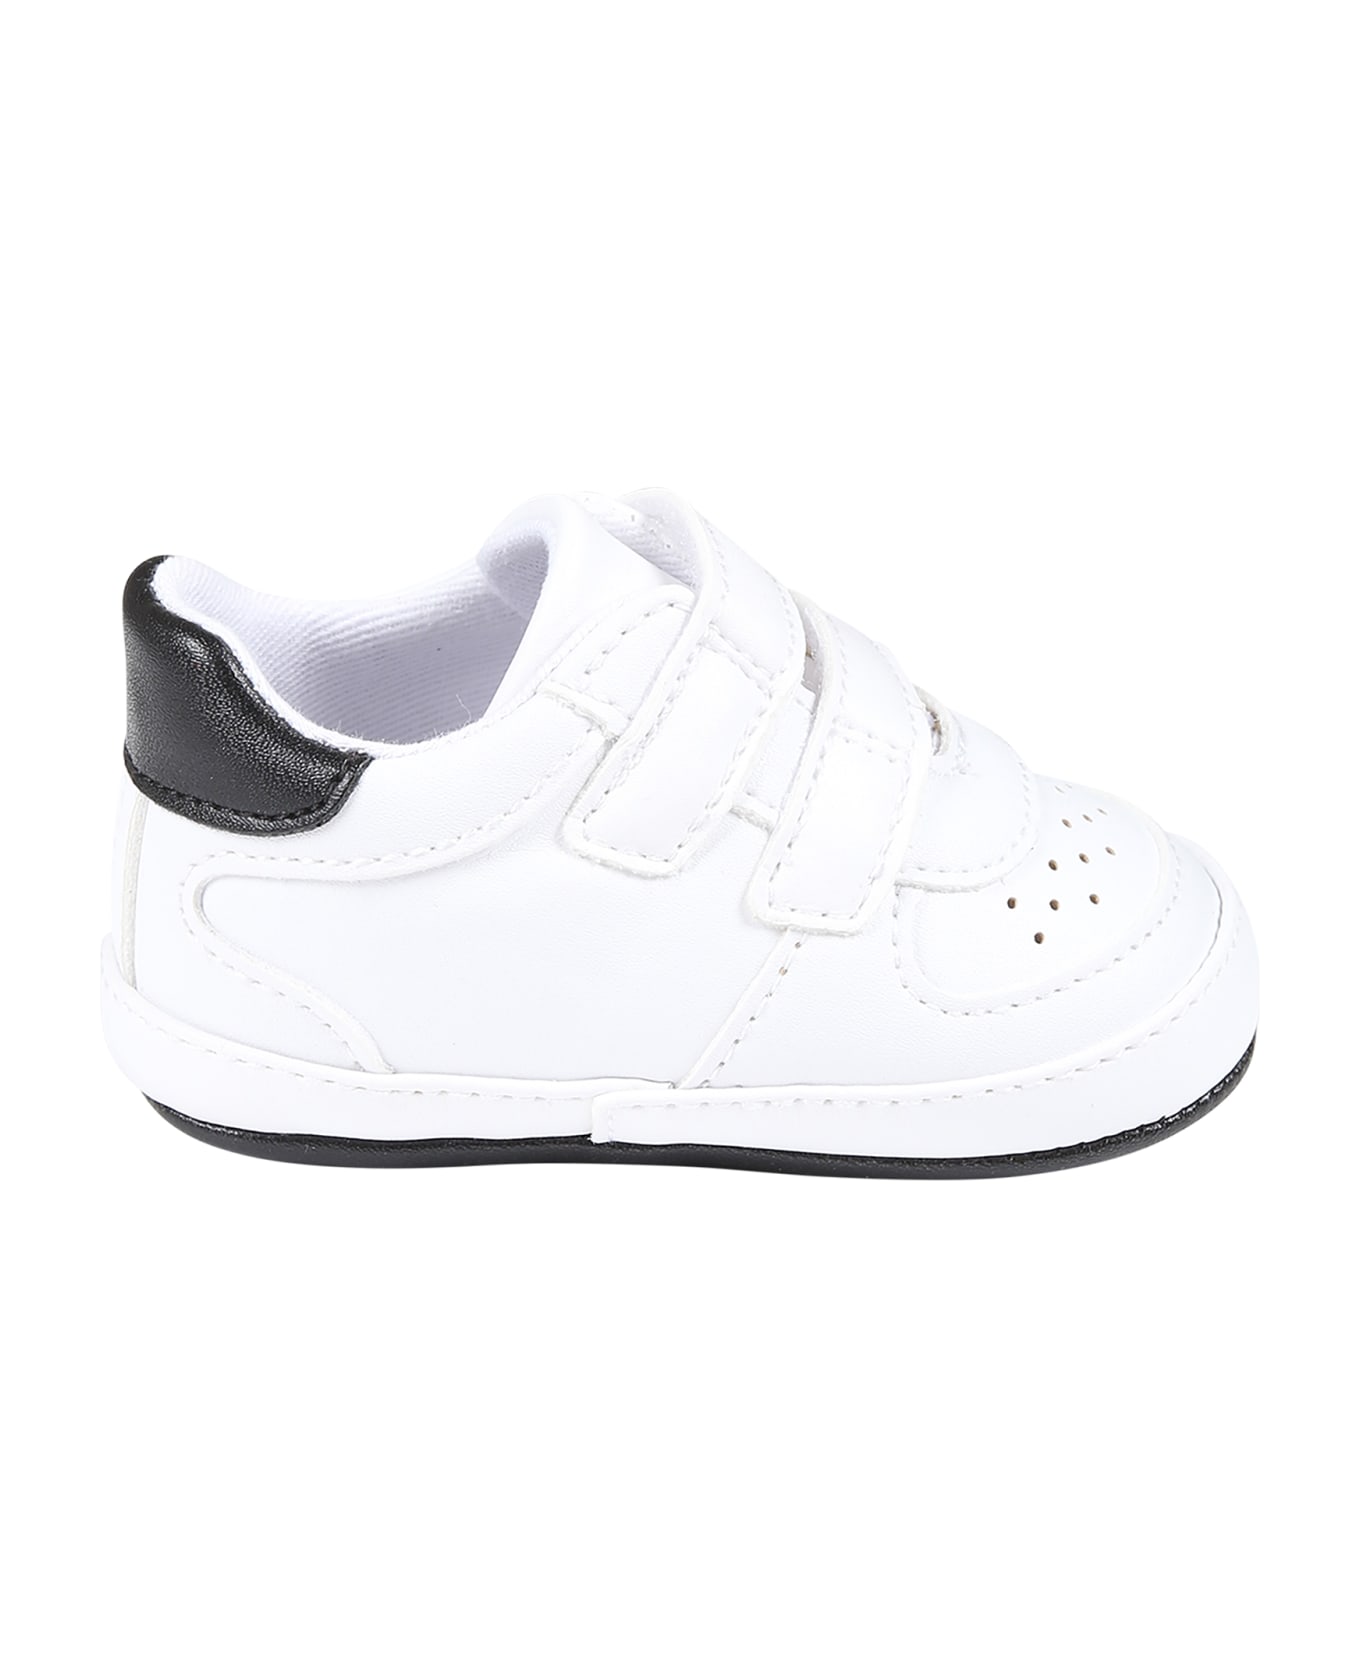 Calvin Klein White Sneakers For Baby Boy With Logo - White